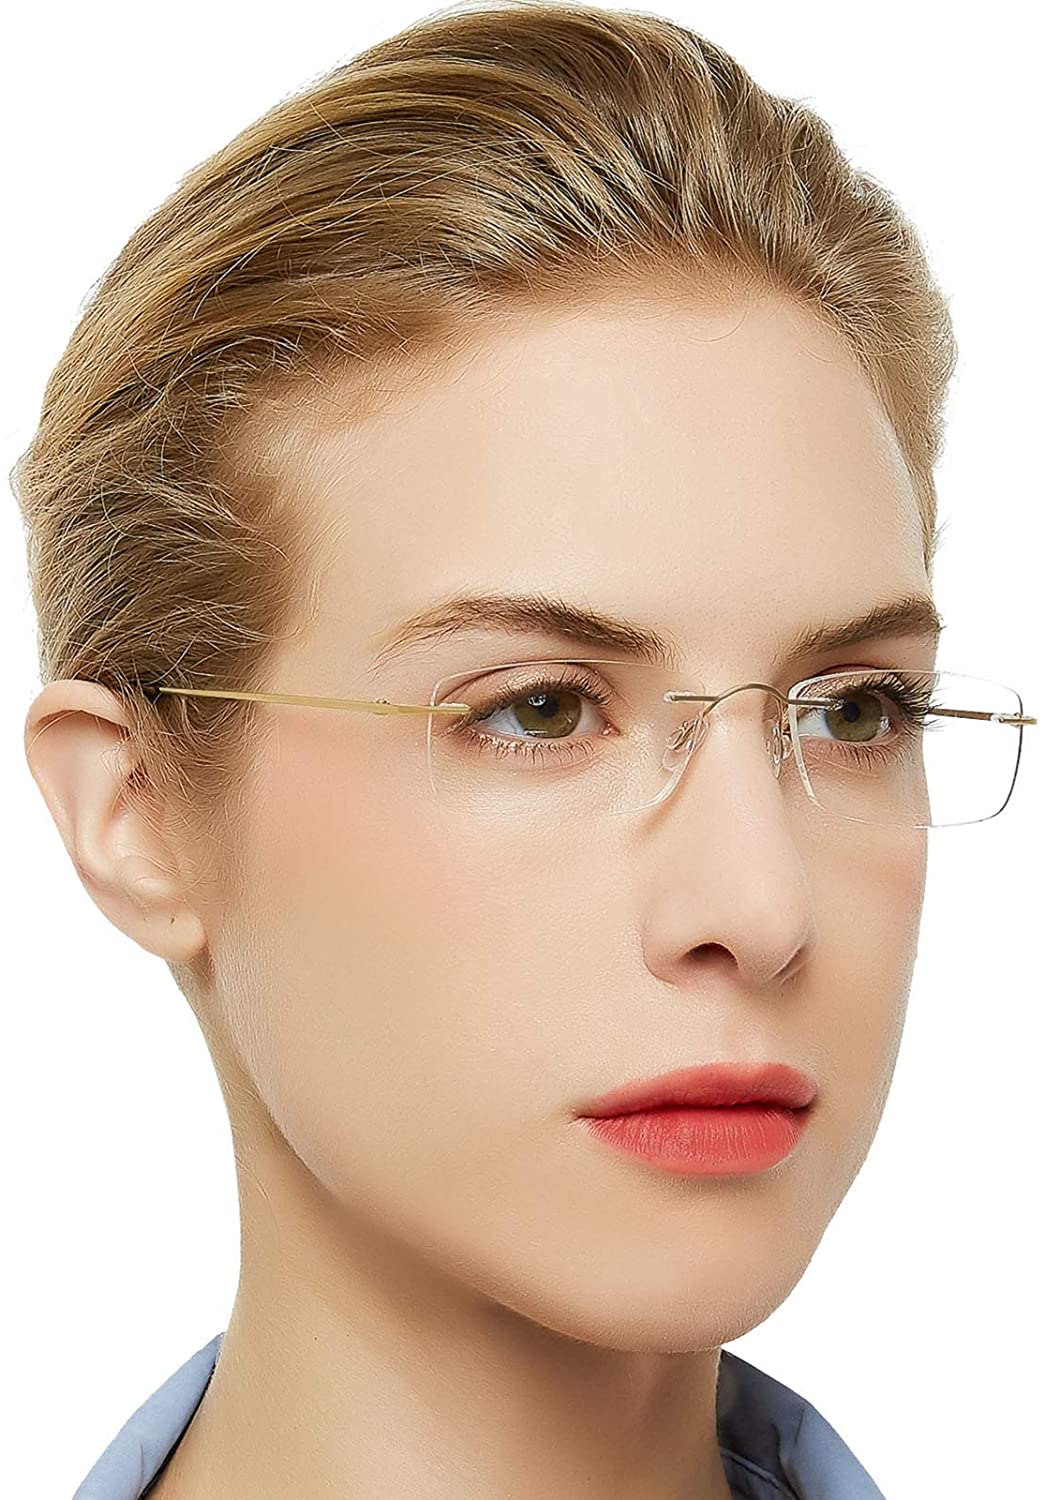 OCCI CHIARI Reading Glasses For Women Men Styish Reader with Titanium Rime Frame Lightweight